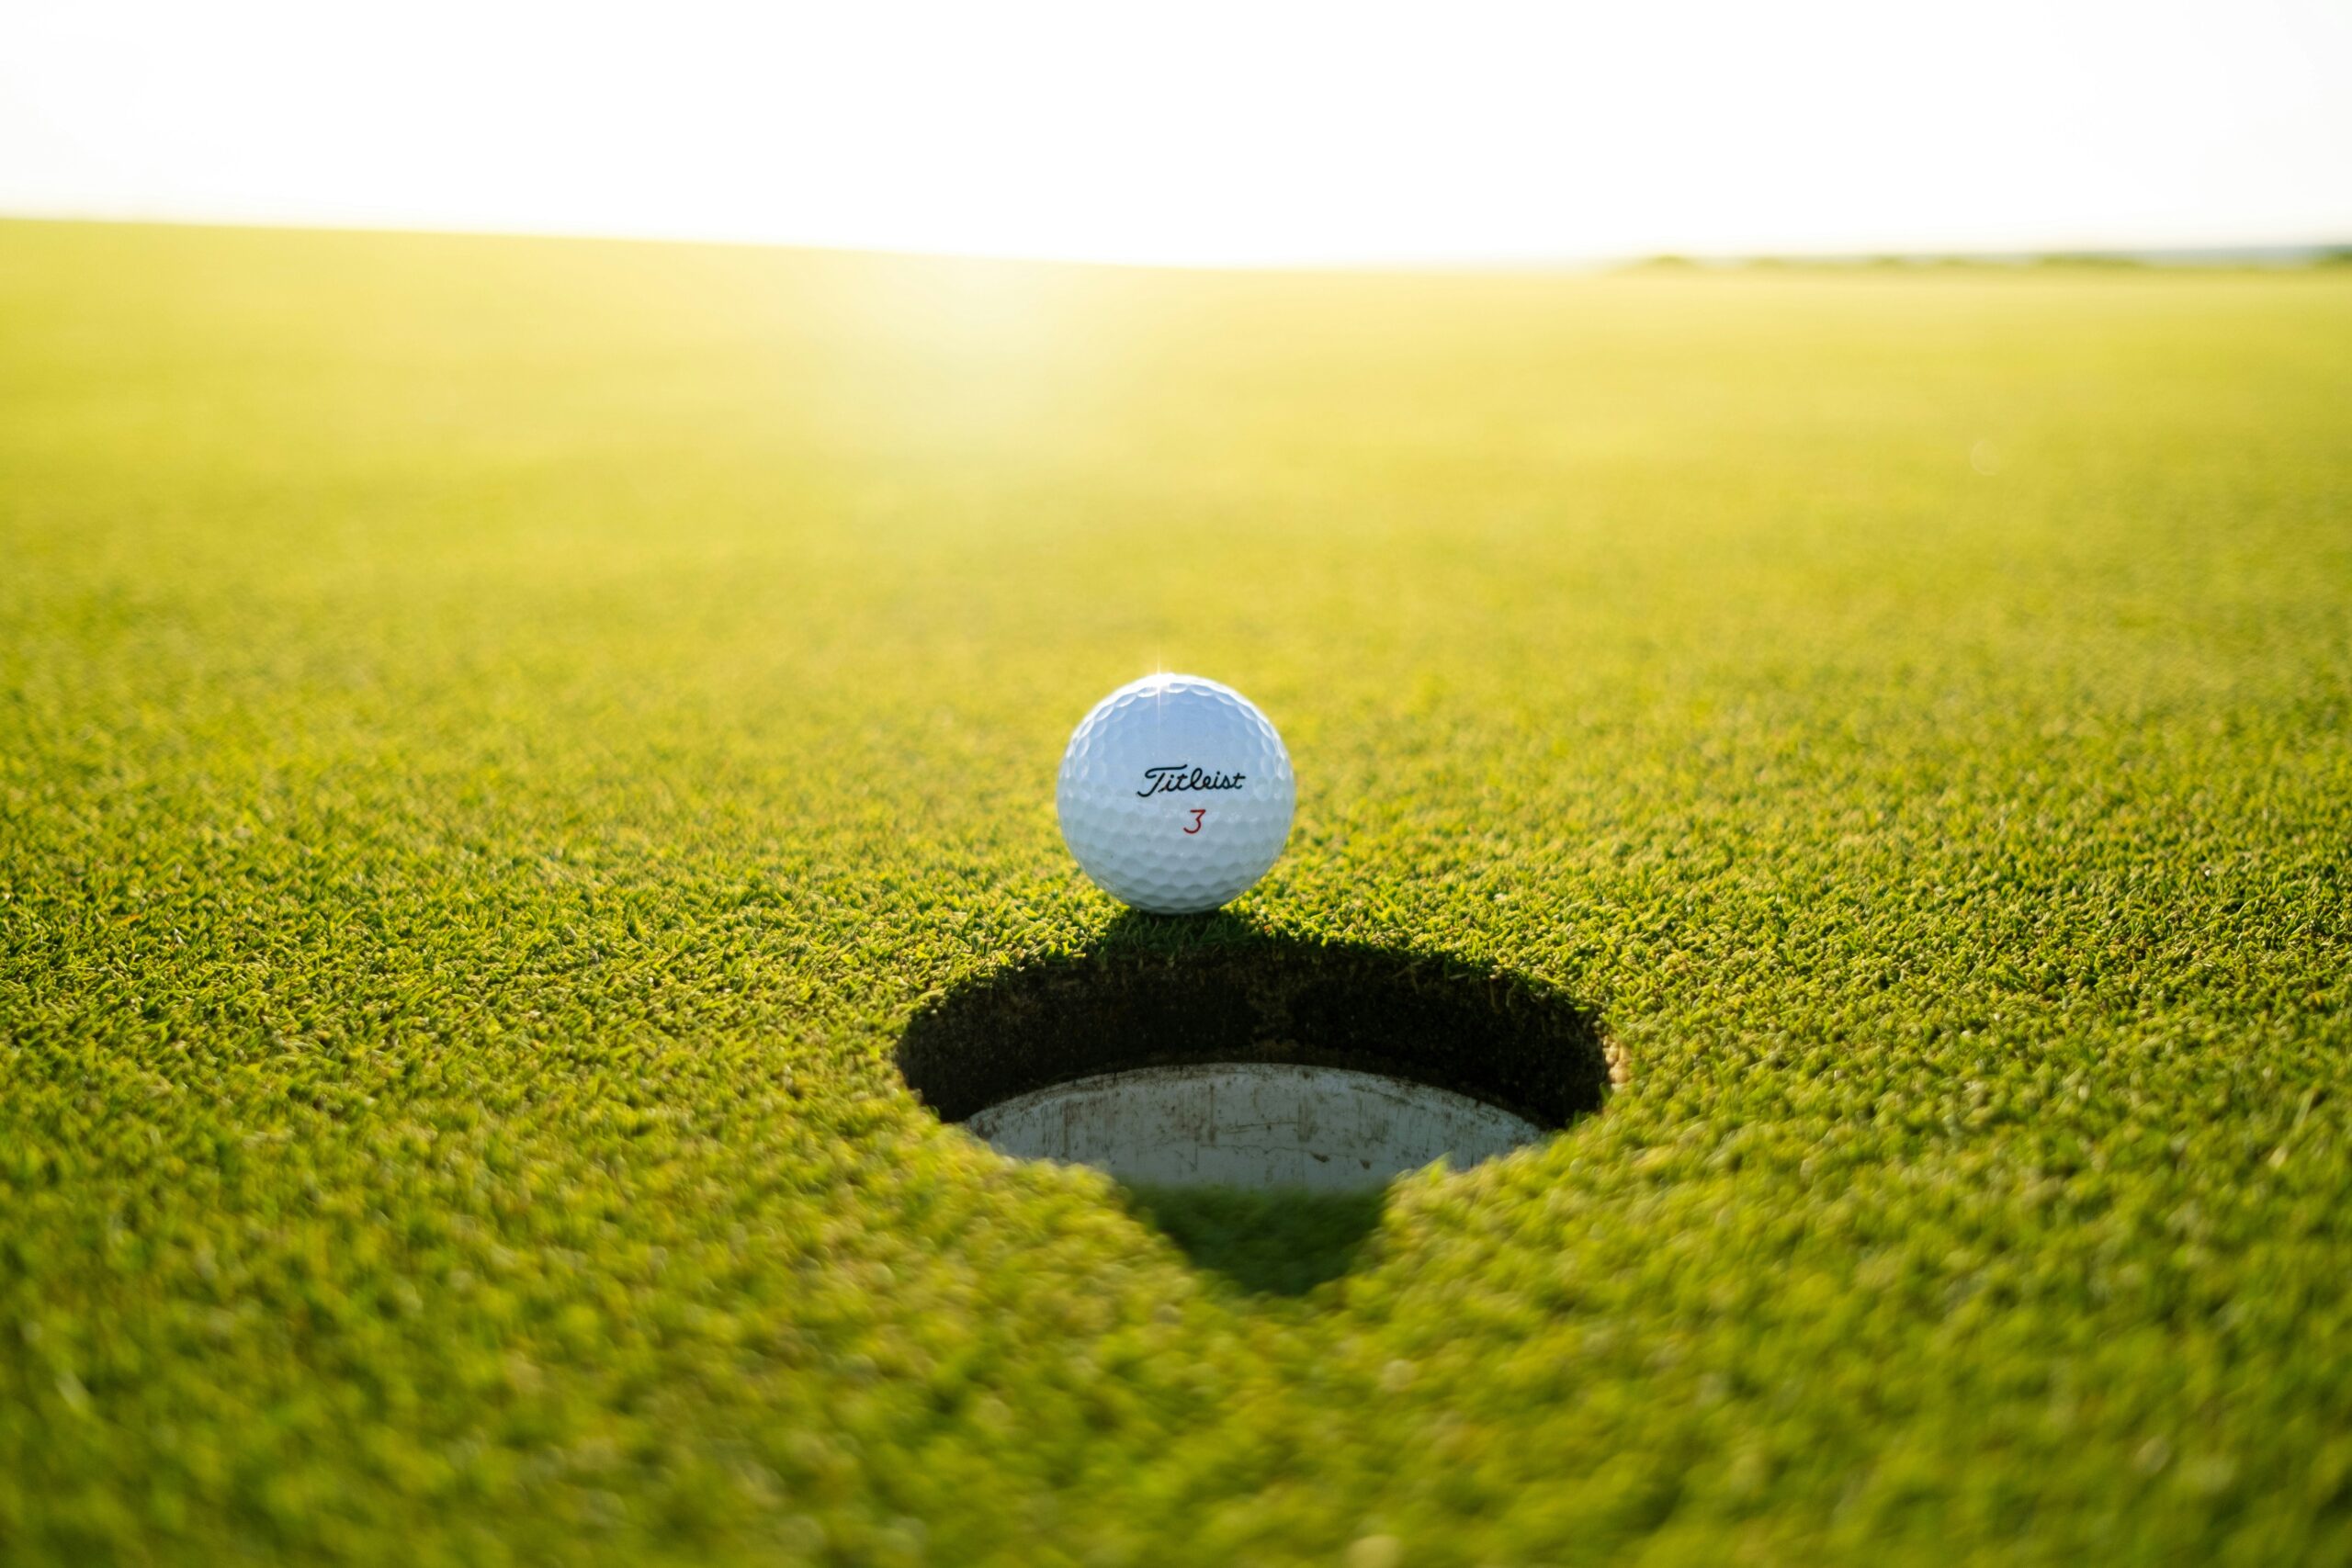 découvrez le plaisir du mini-golf dans un cadre enchanteur, et profitez de moments de détente en famille ou entre amis. réservez votre partie dès maintenant !